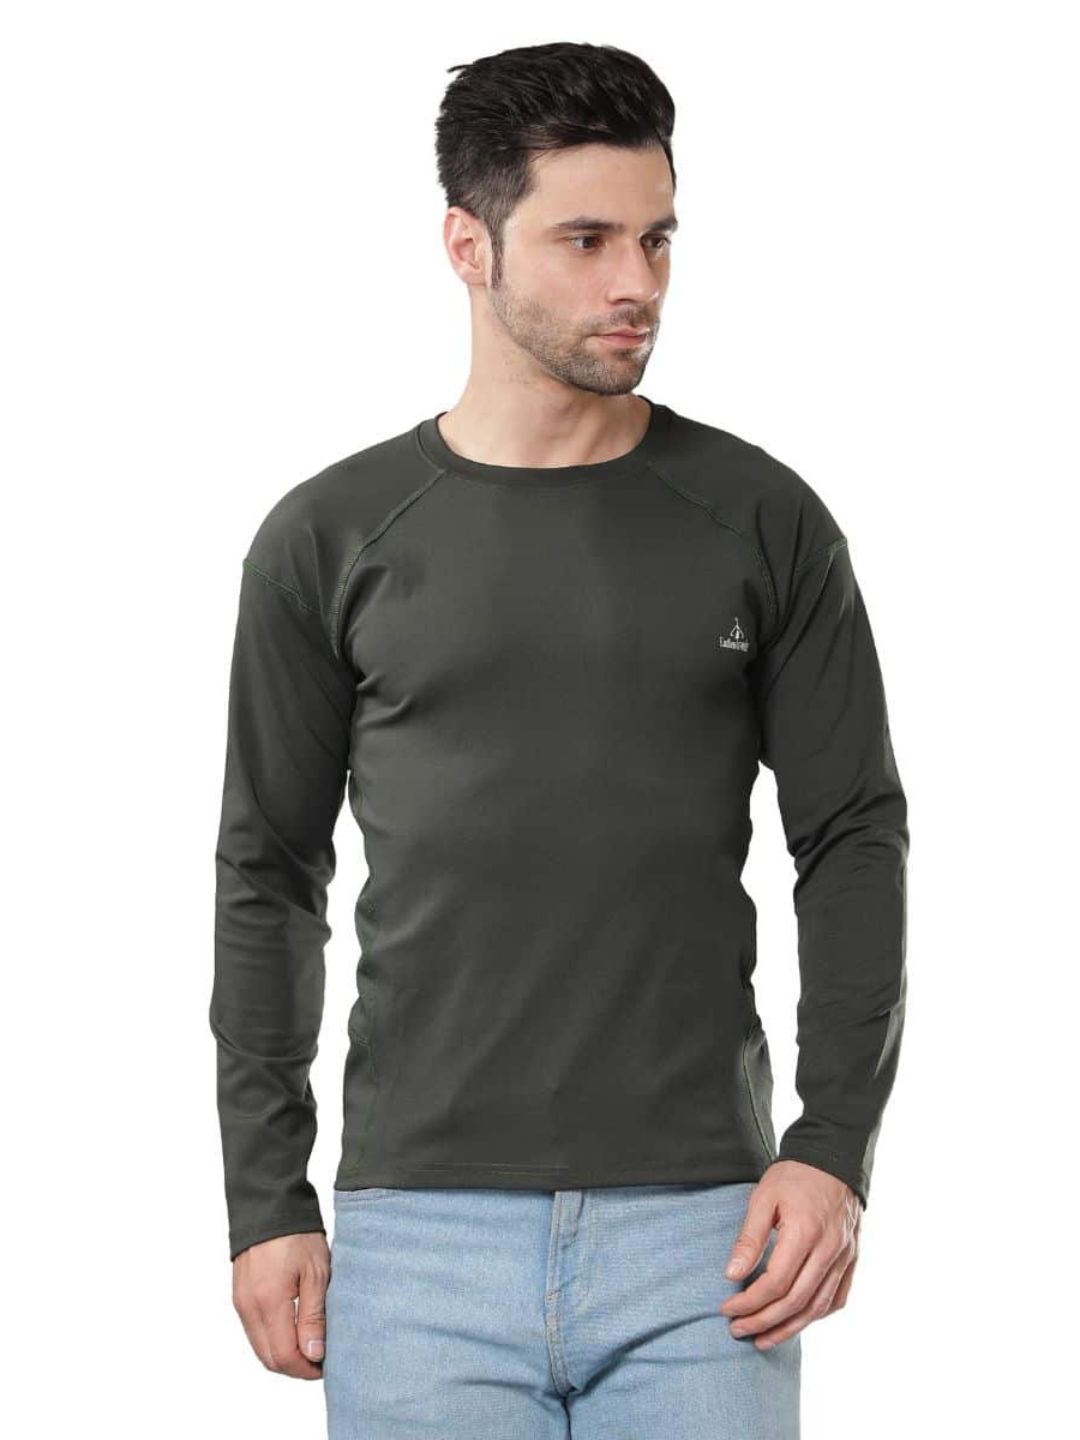 Endless Trendz Olive Green T-Shirt Dryfit for Men